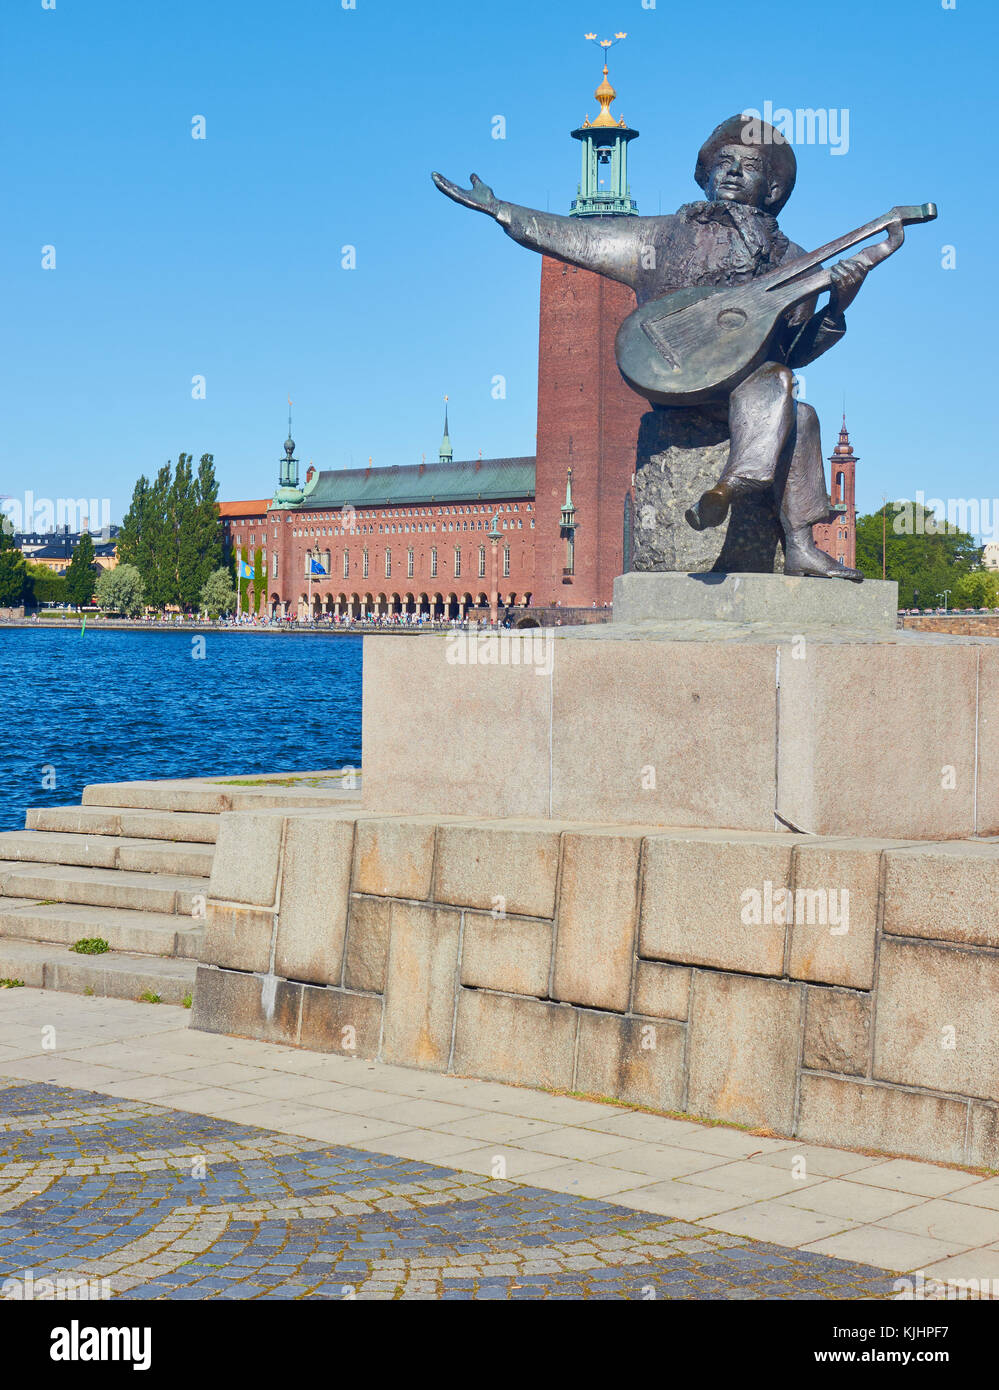 Statue von Evert Taube vor allem Troubadour der Schwedischen Ballade Tradition mit Stadshuset (Rathaus) im Hintergrund, Riddarholmen, Stockholm, Schweden Stockfoto